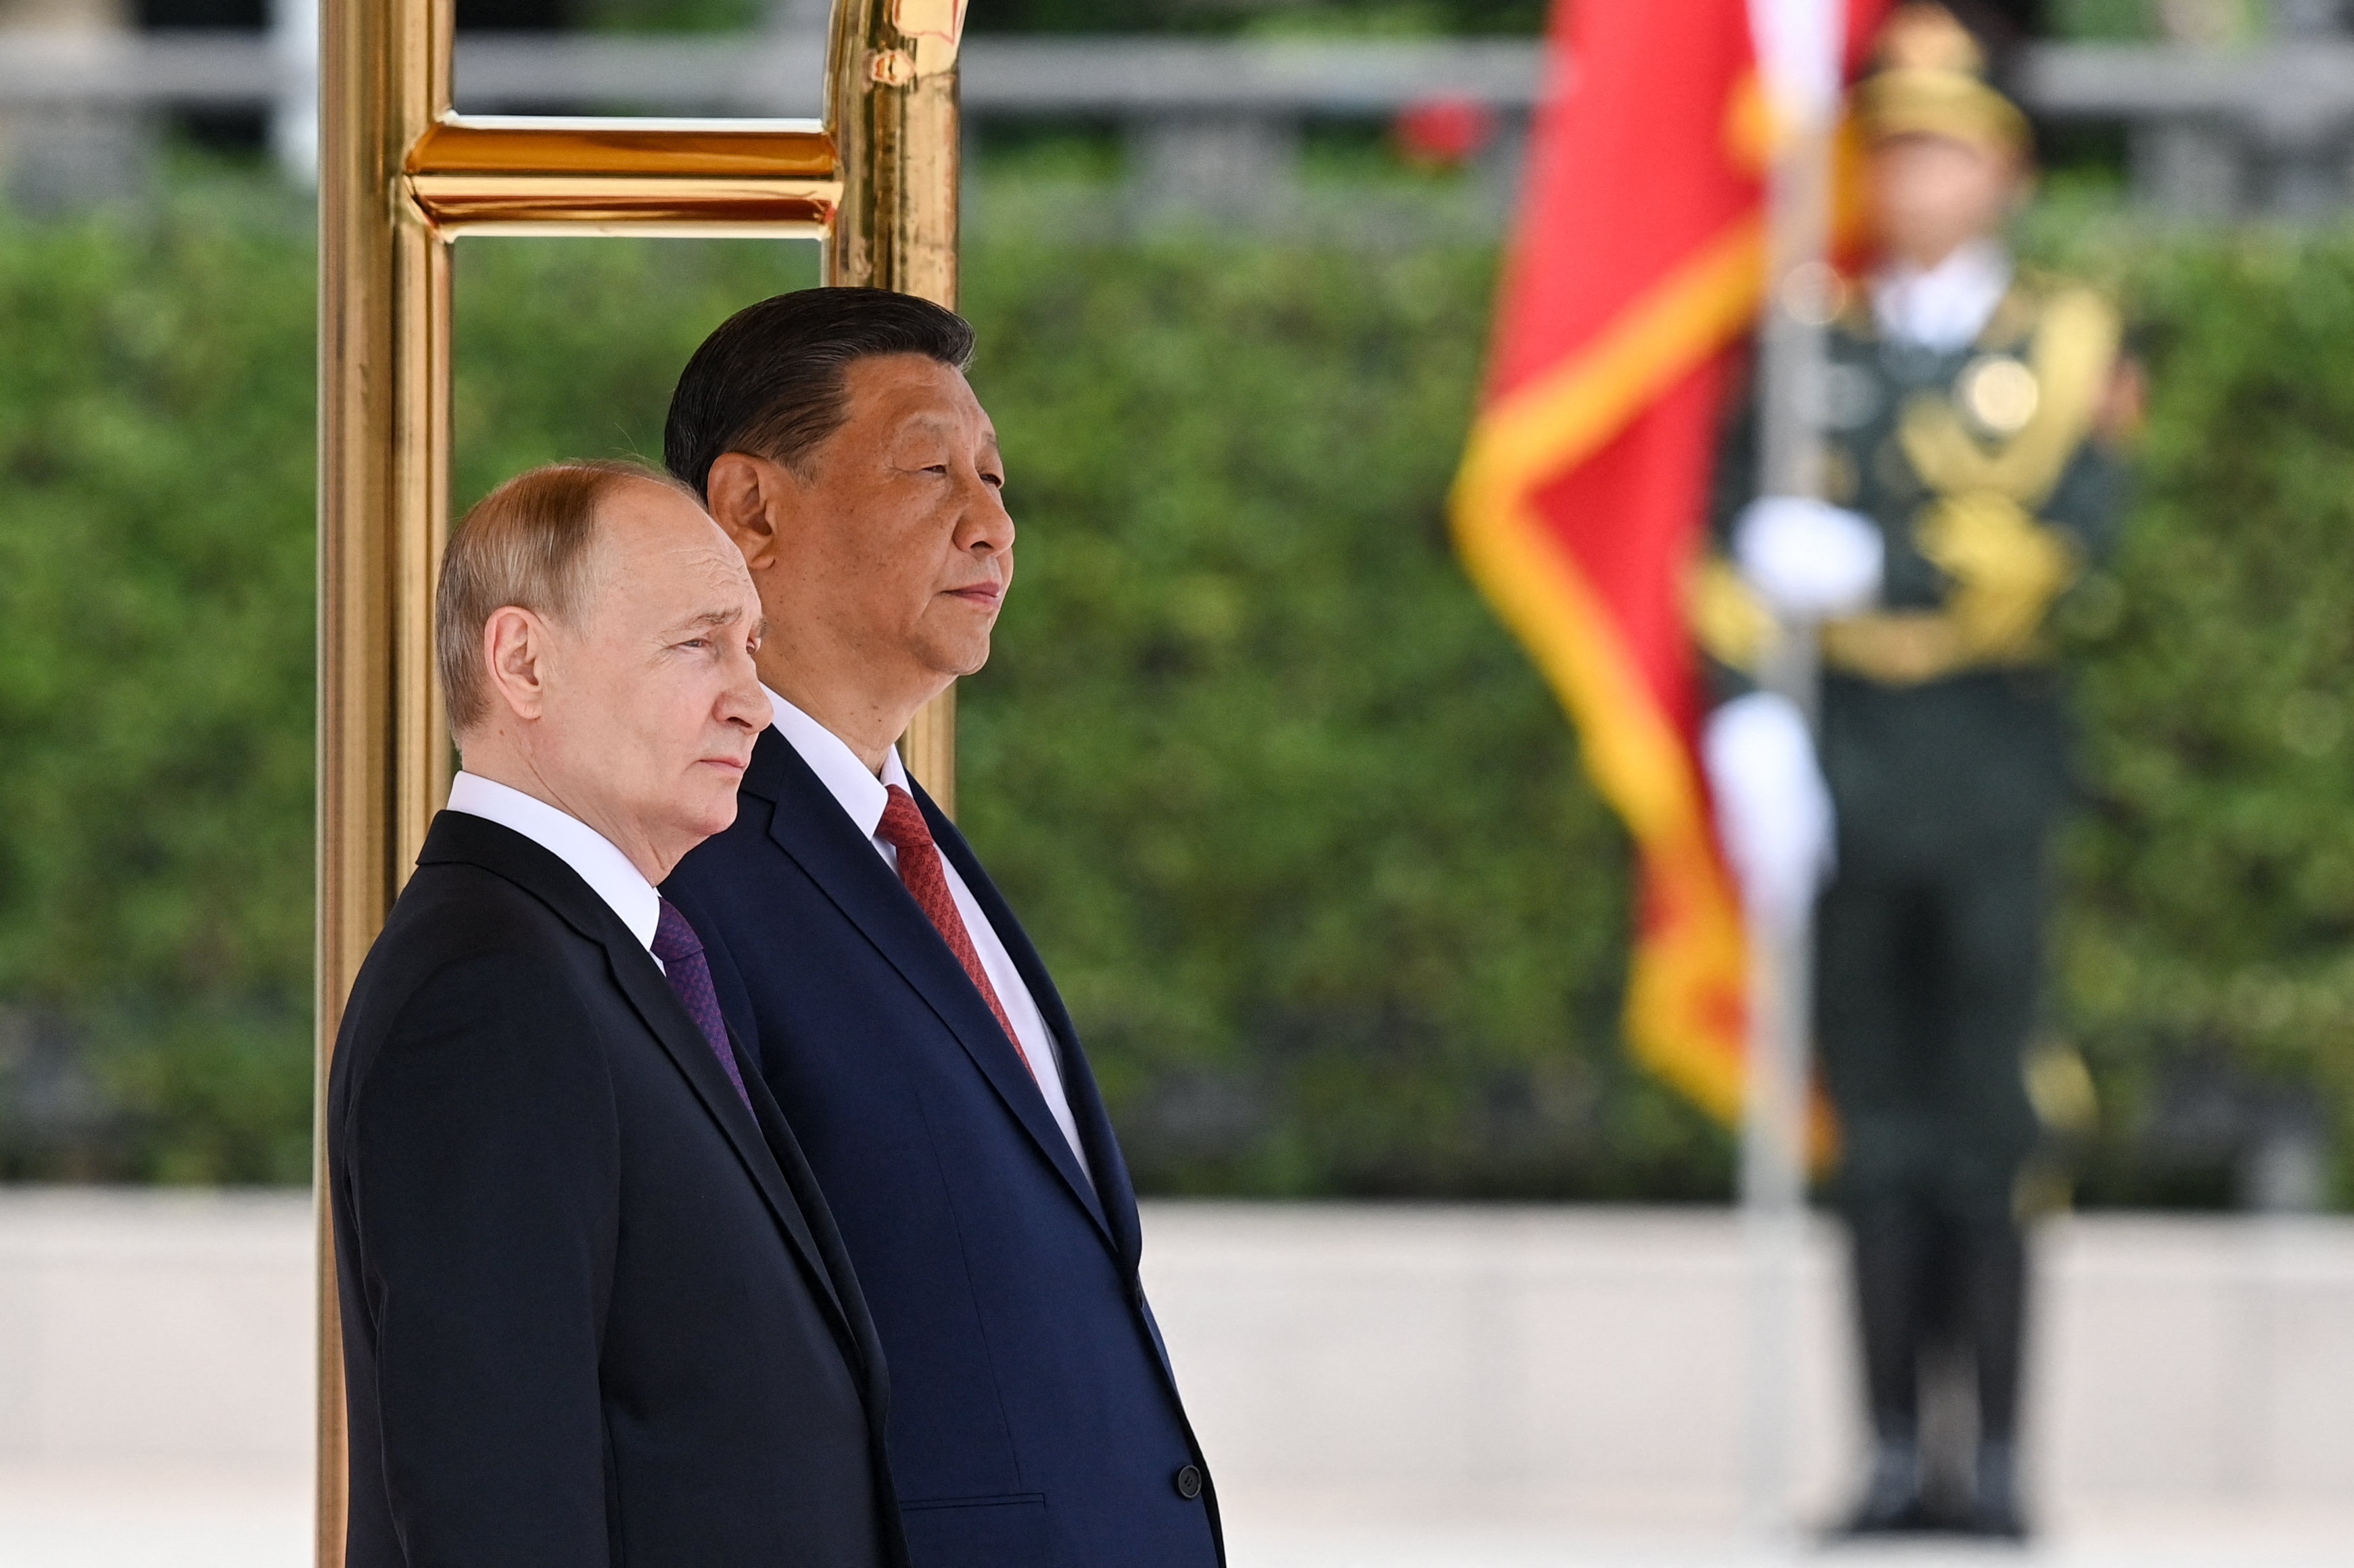 Le voyage de Poutine en Chine déclenche une avalanche de blagues et de mèmes : « Revue des employés »